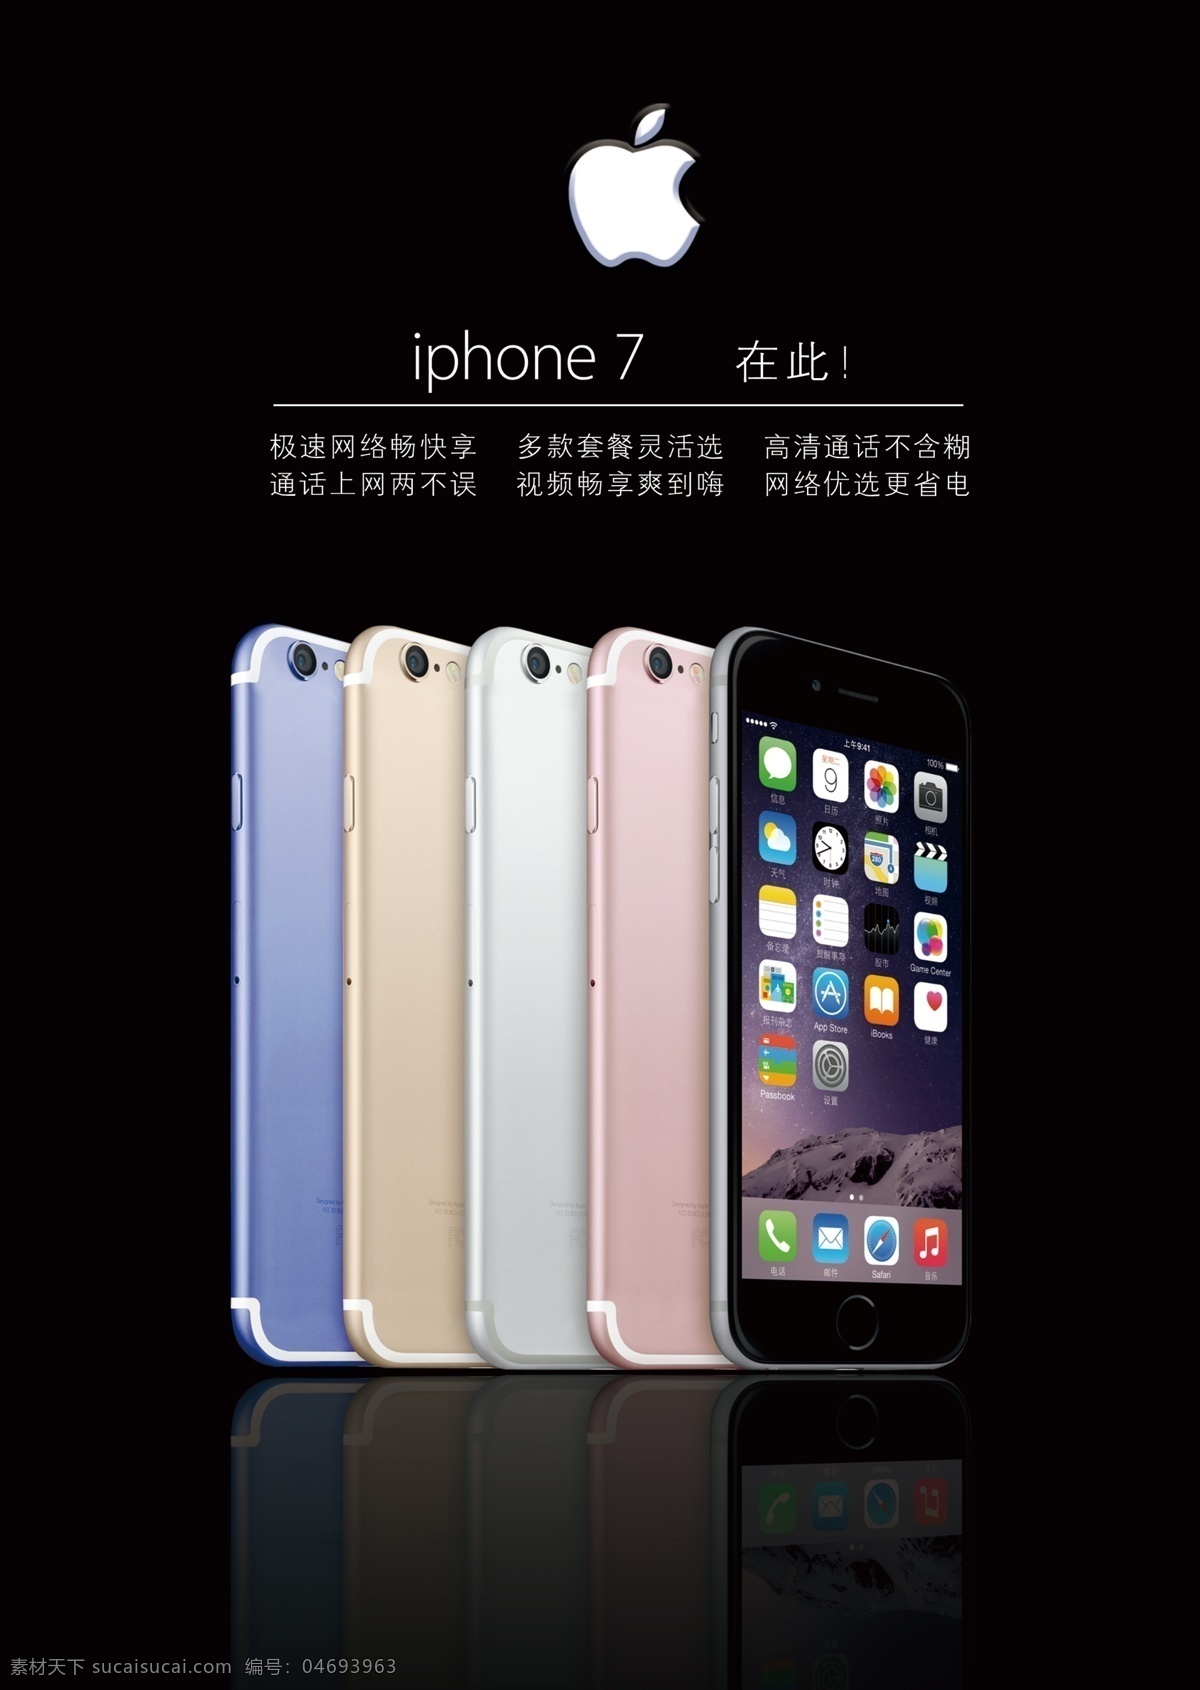 苹果 iphone7 高亮黑 最新 发布 apple 手机海报 网站素材 单页设计 多色